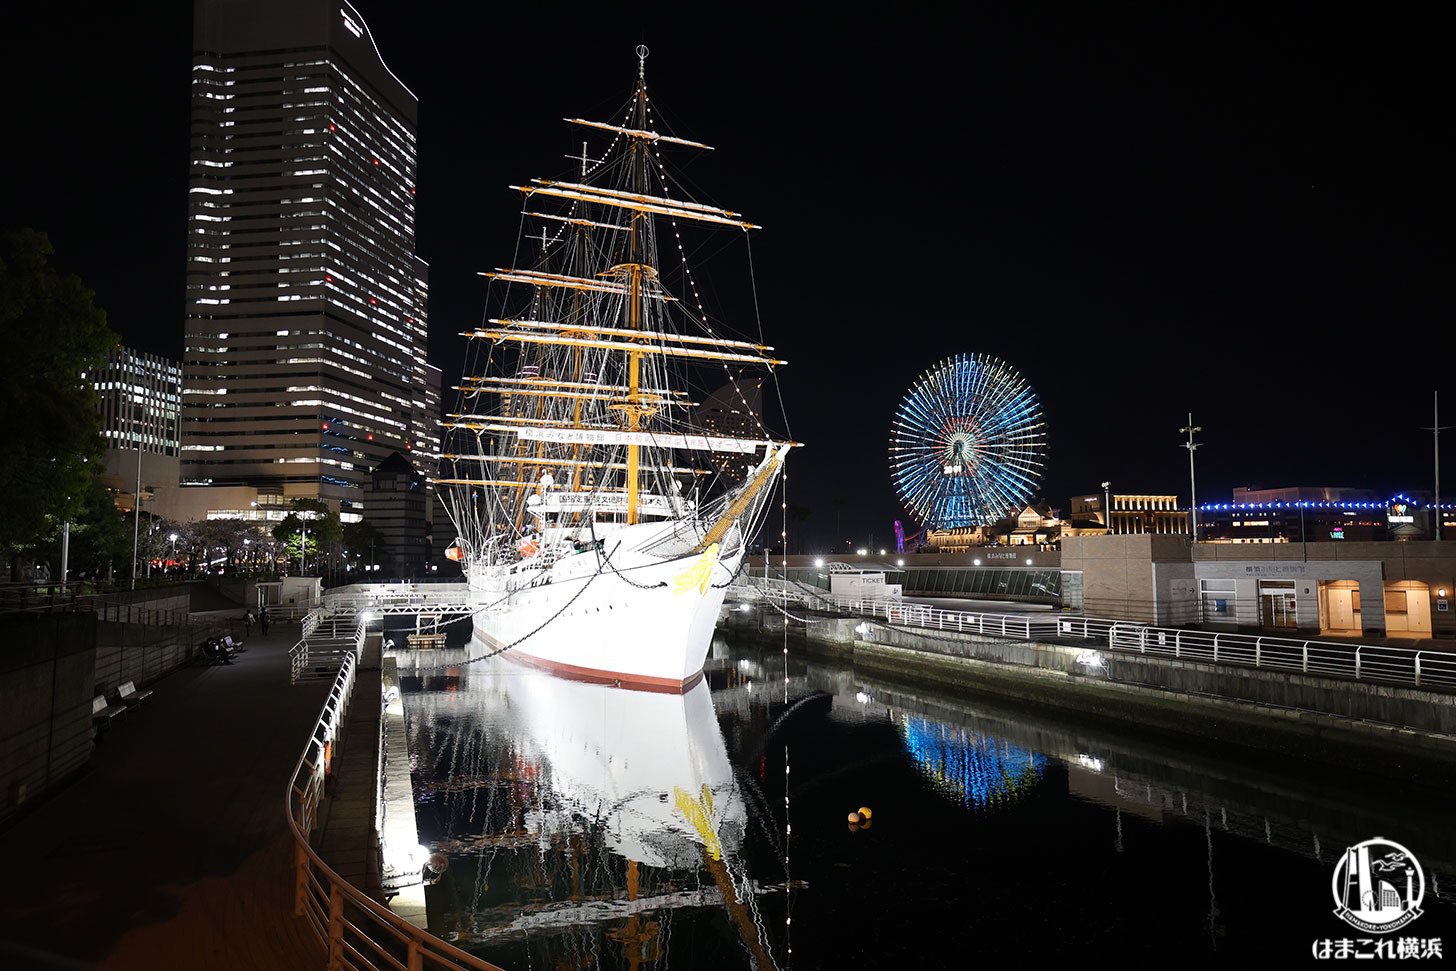 帆船日本丸 夜景Ver